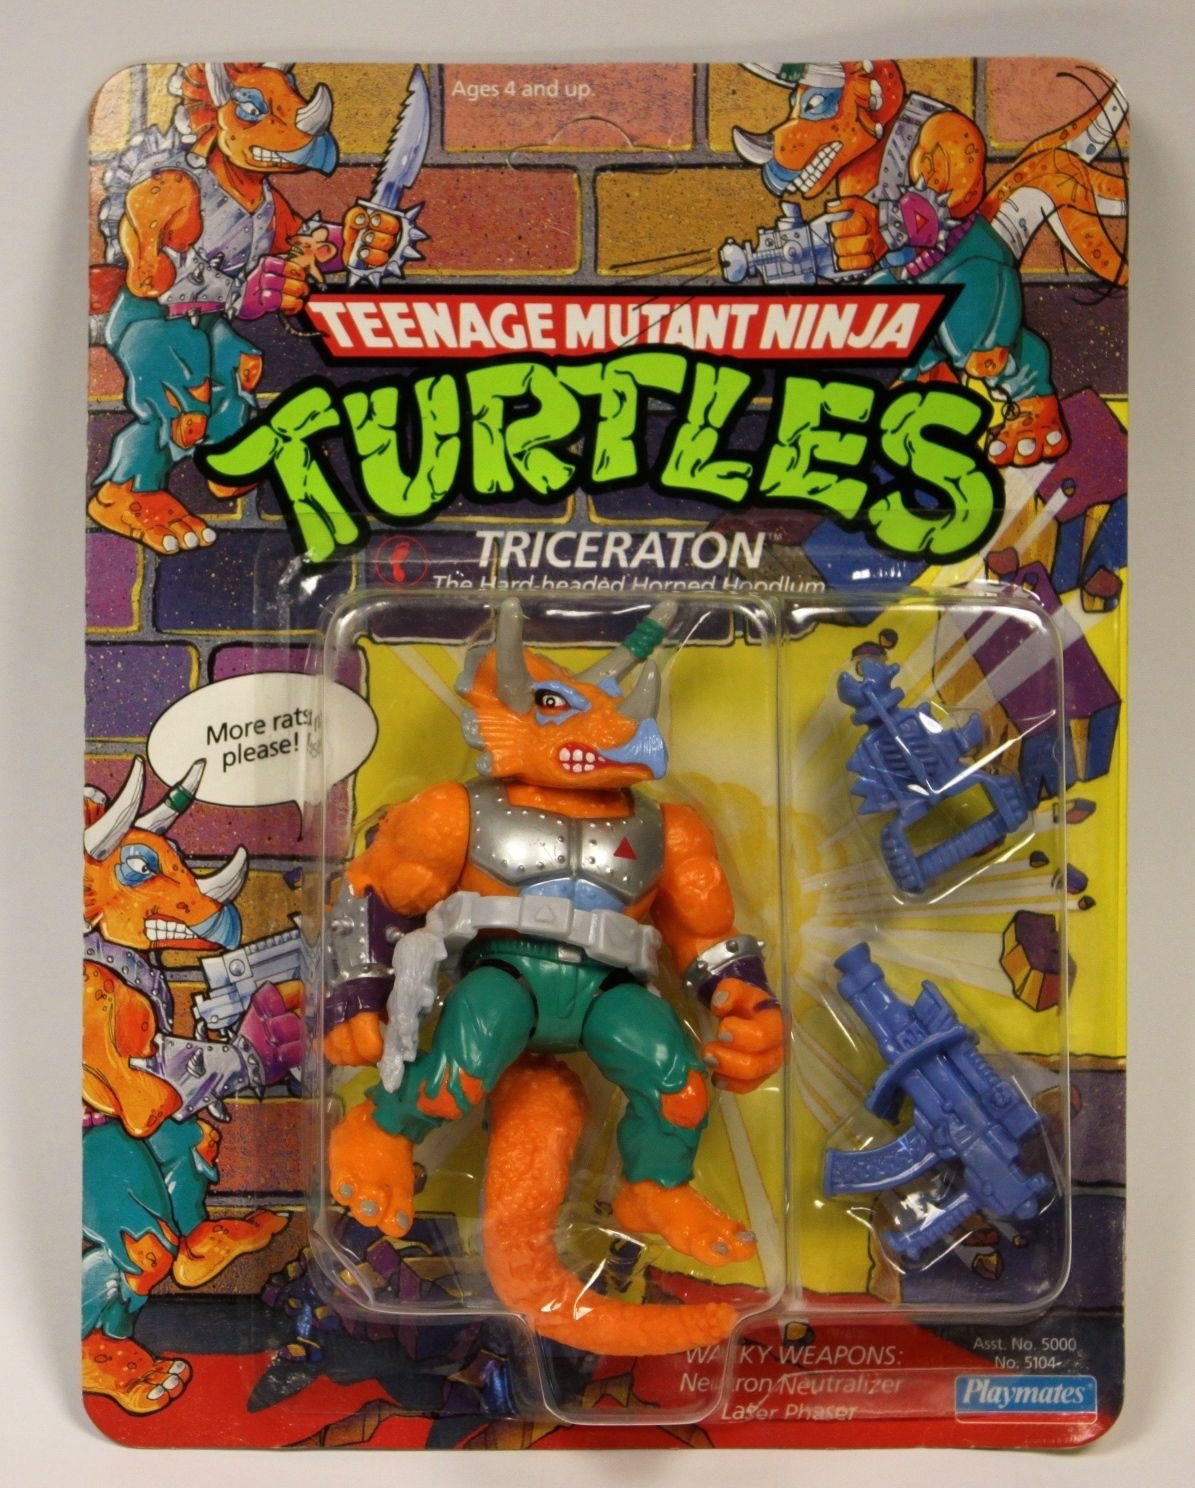 Teenage Mutant Ninja Turtles Triceraton, No. 5104 - Primary